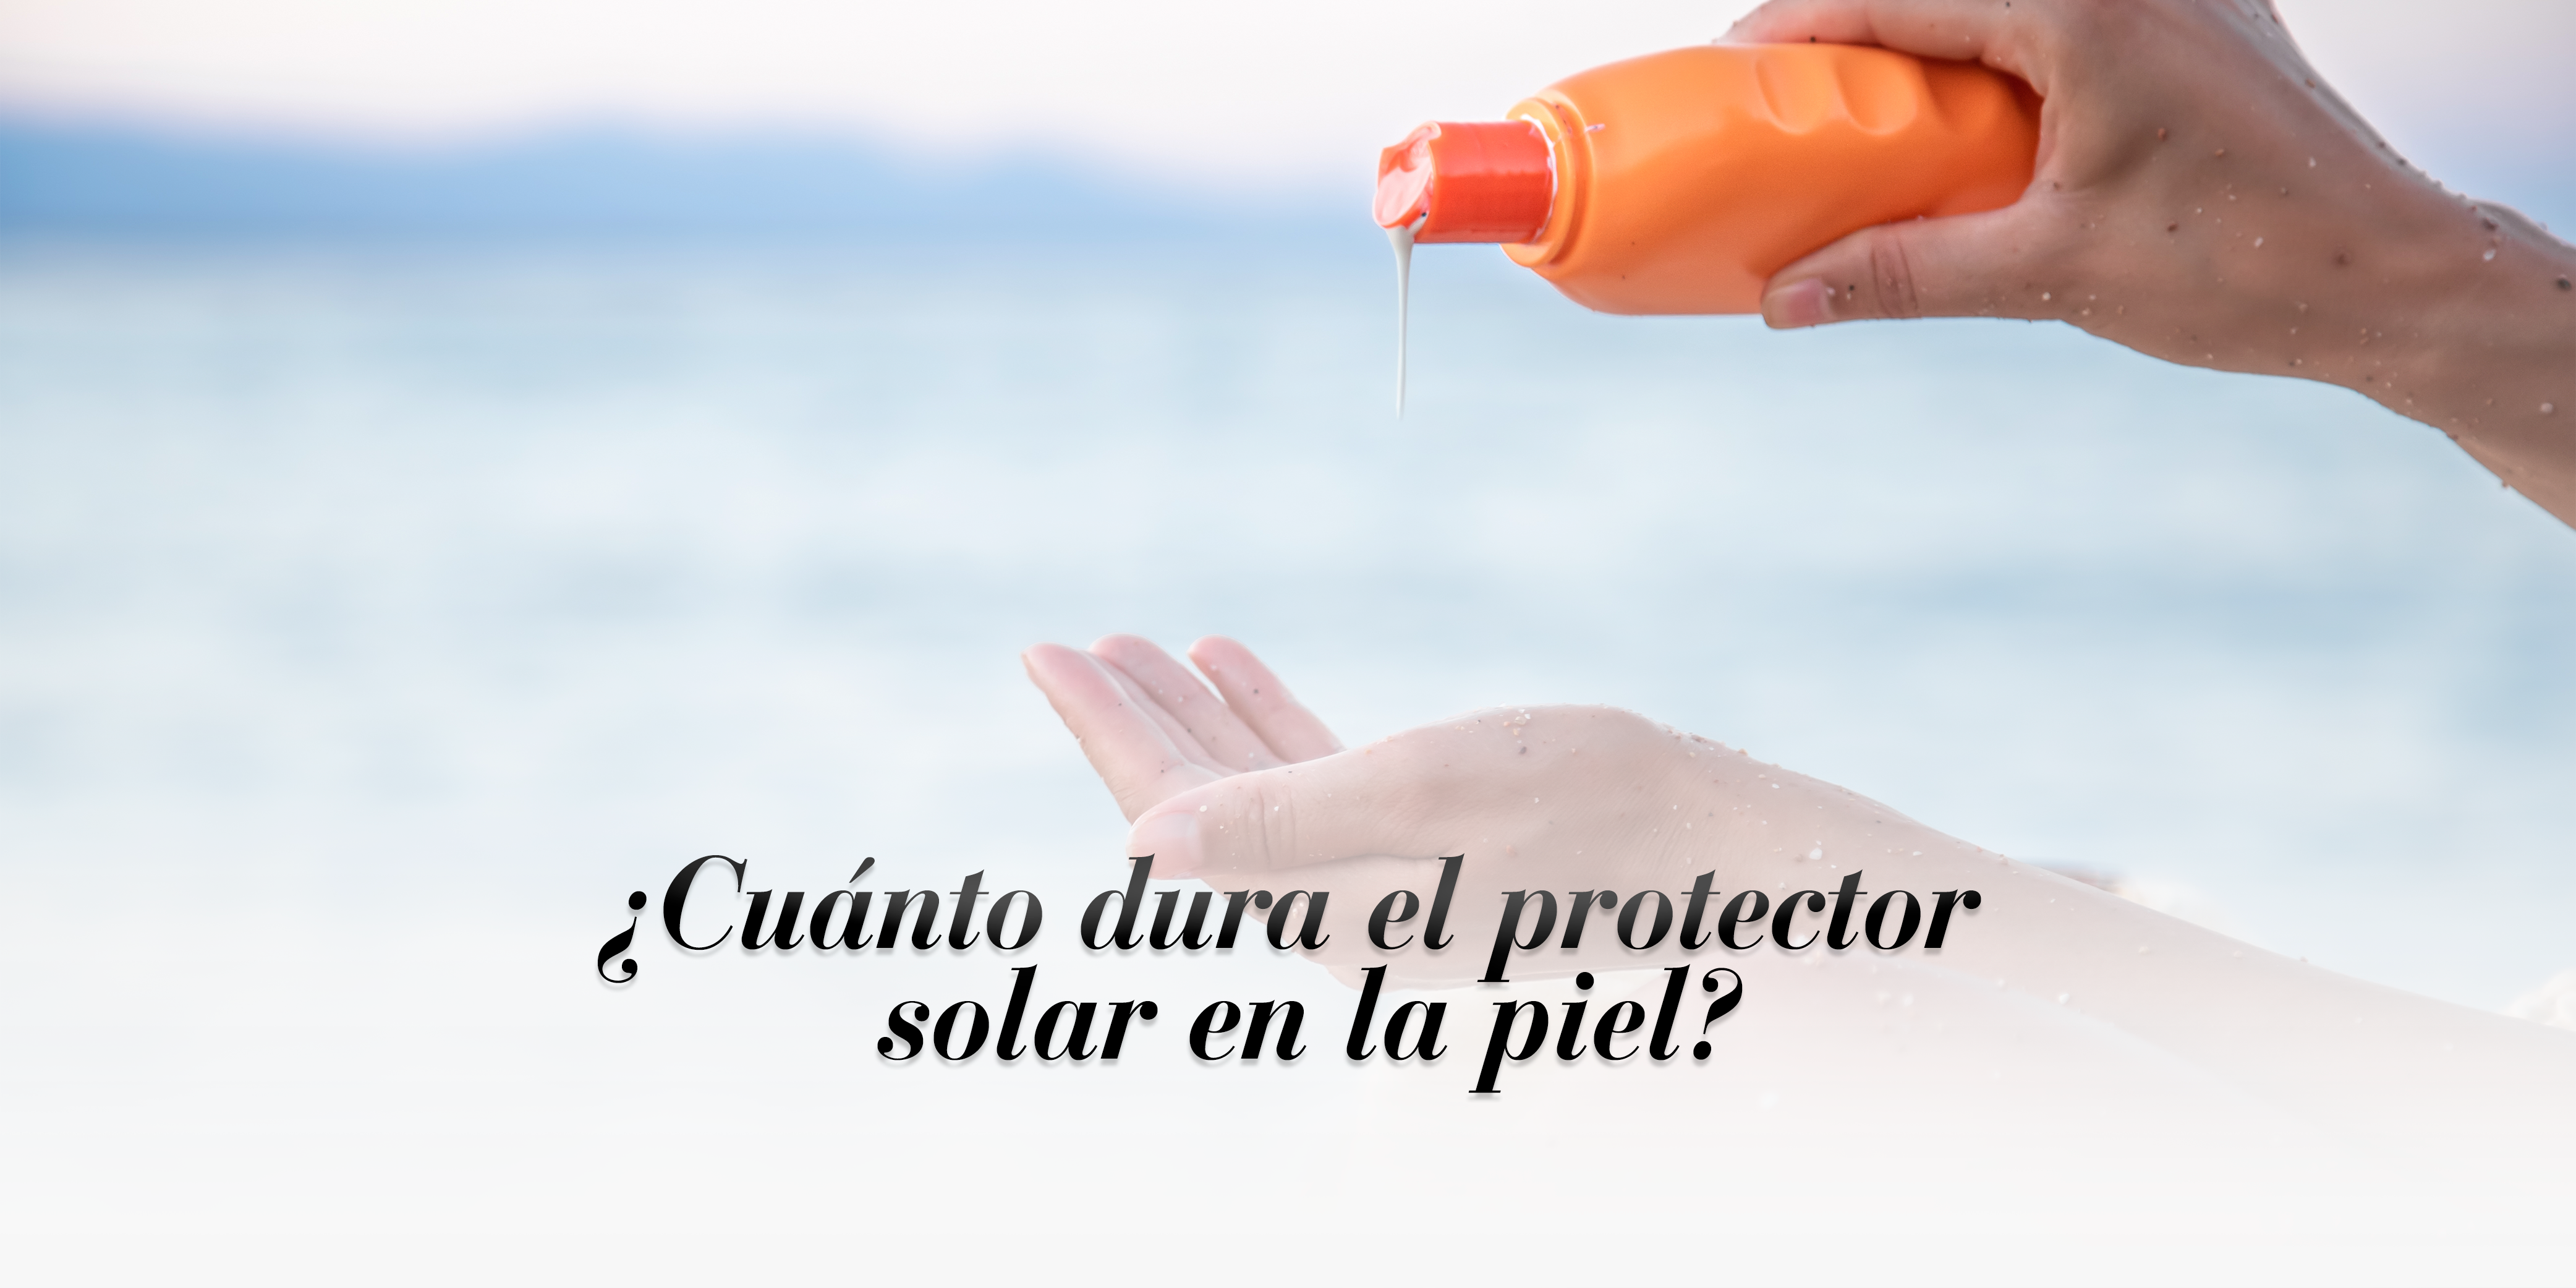 ¿Cuánto dura el protector solar en la piel?